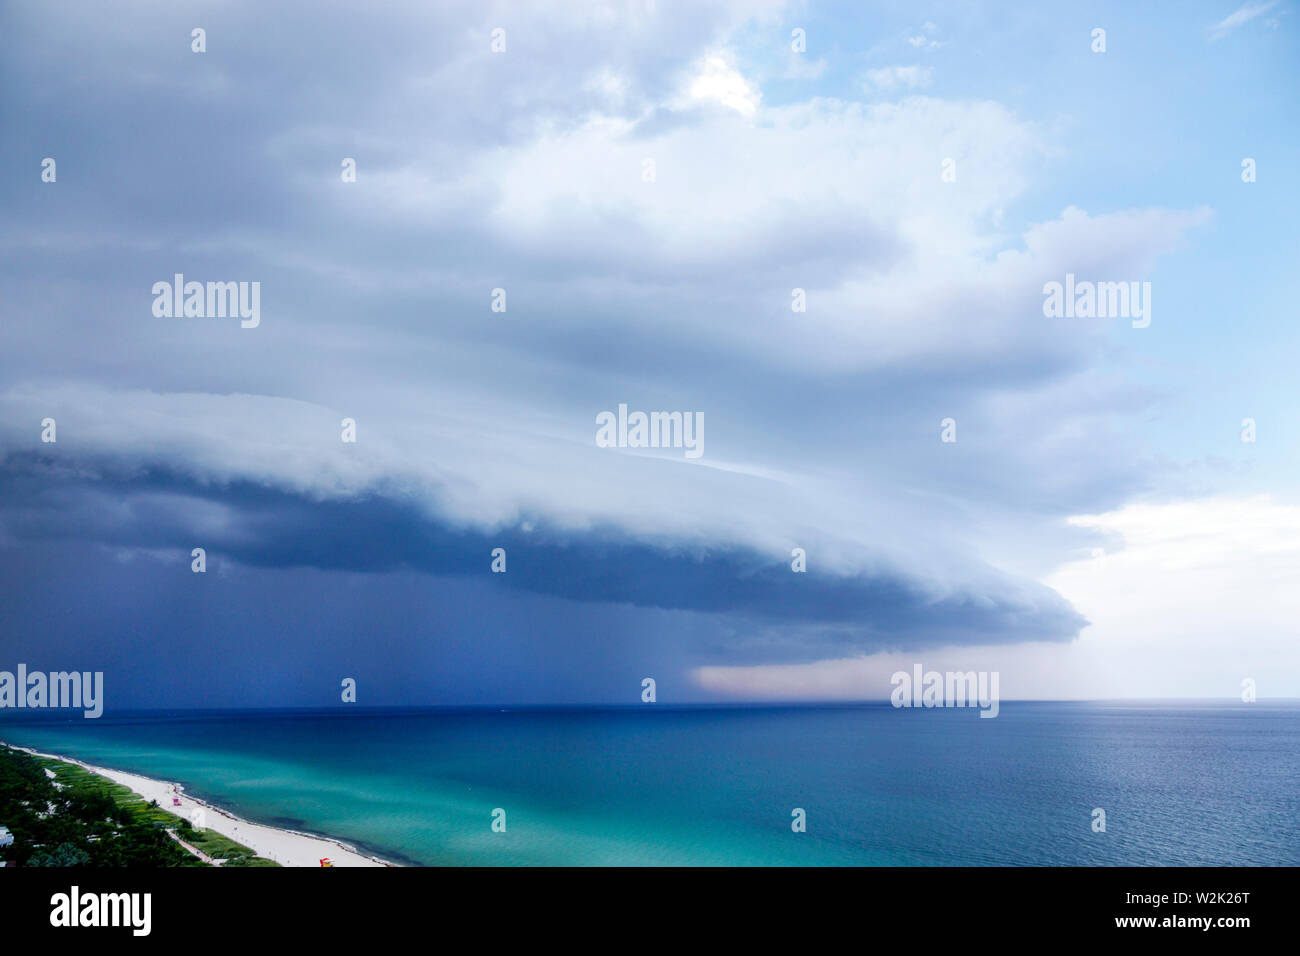 Miami Beach Florida, North Beach, Océano Atlántico, el clima nubes cielo frente a tormentas, arcus cuña estante nube lluvia,FL190704002 Foto de stock